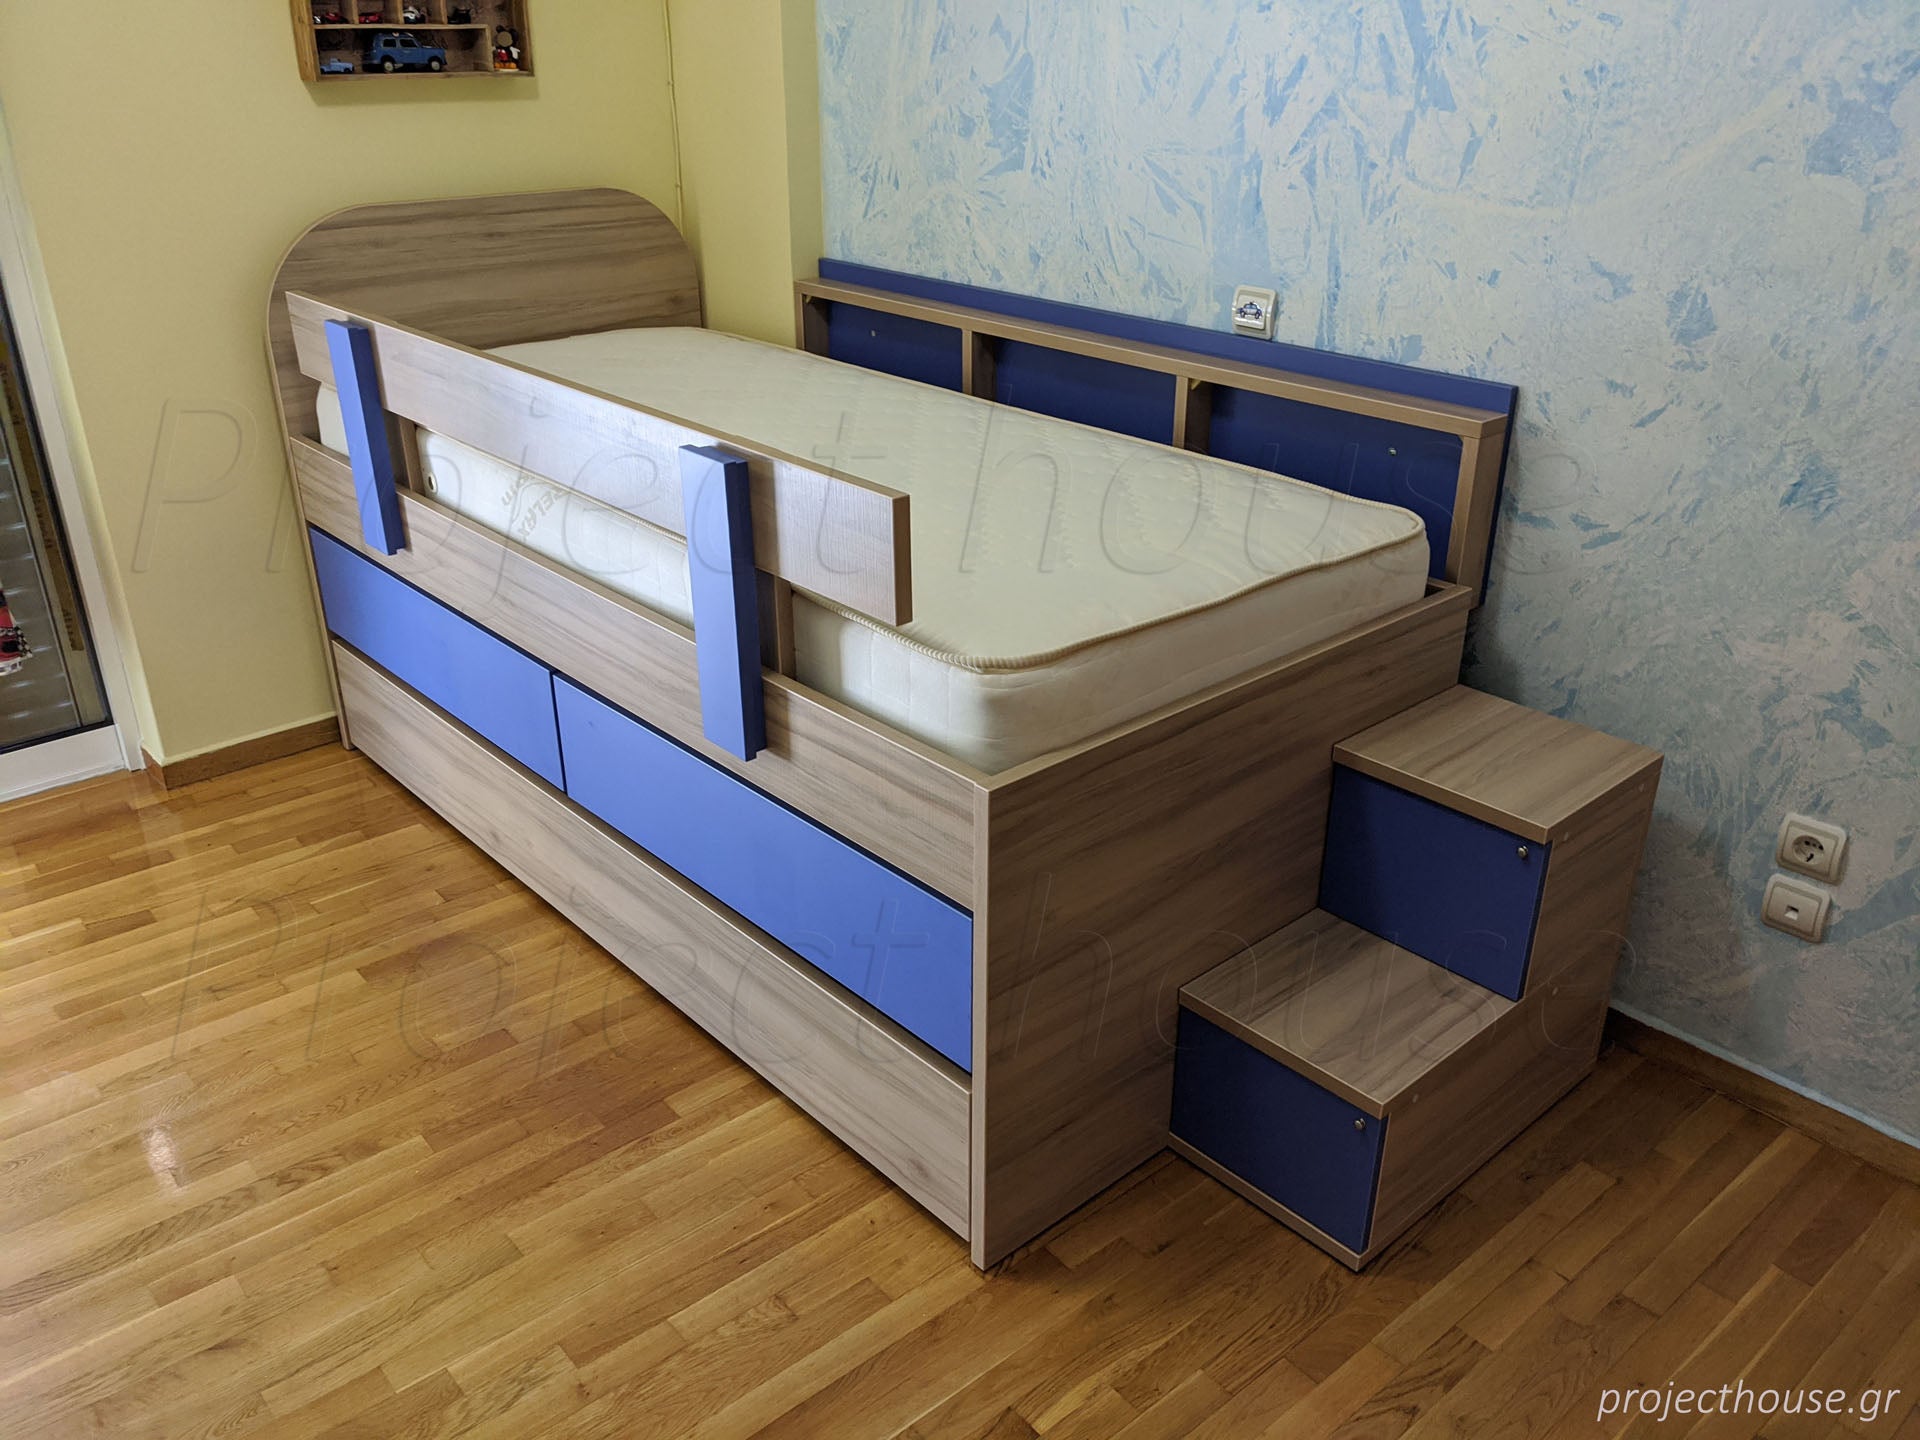 Κρεβάτι με συρτάρια και συρρόμενο μηχανισμό μαζί με σκαλάκια